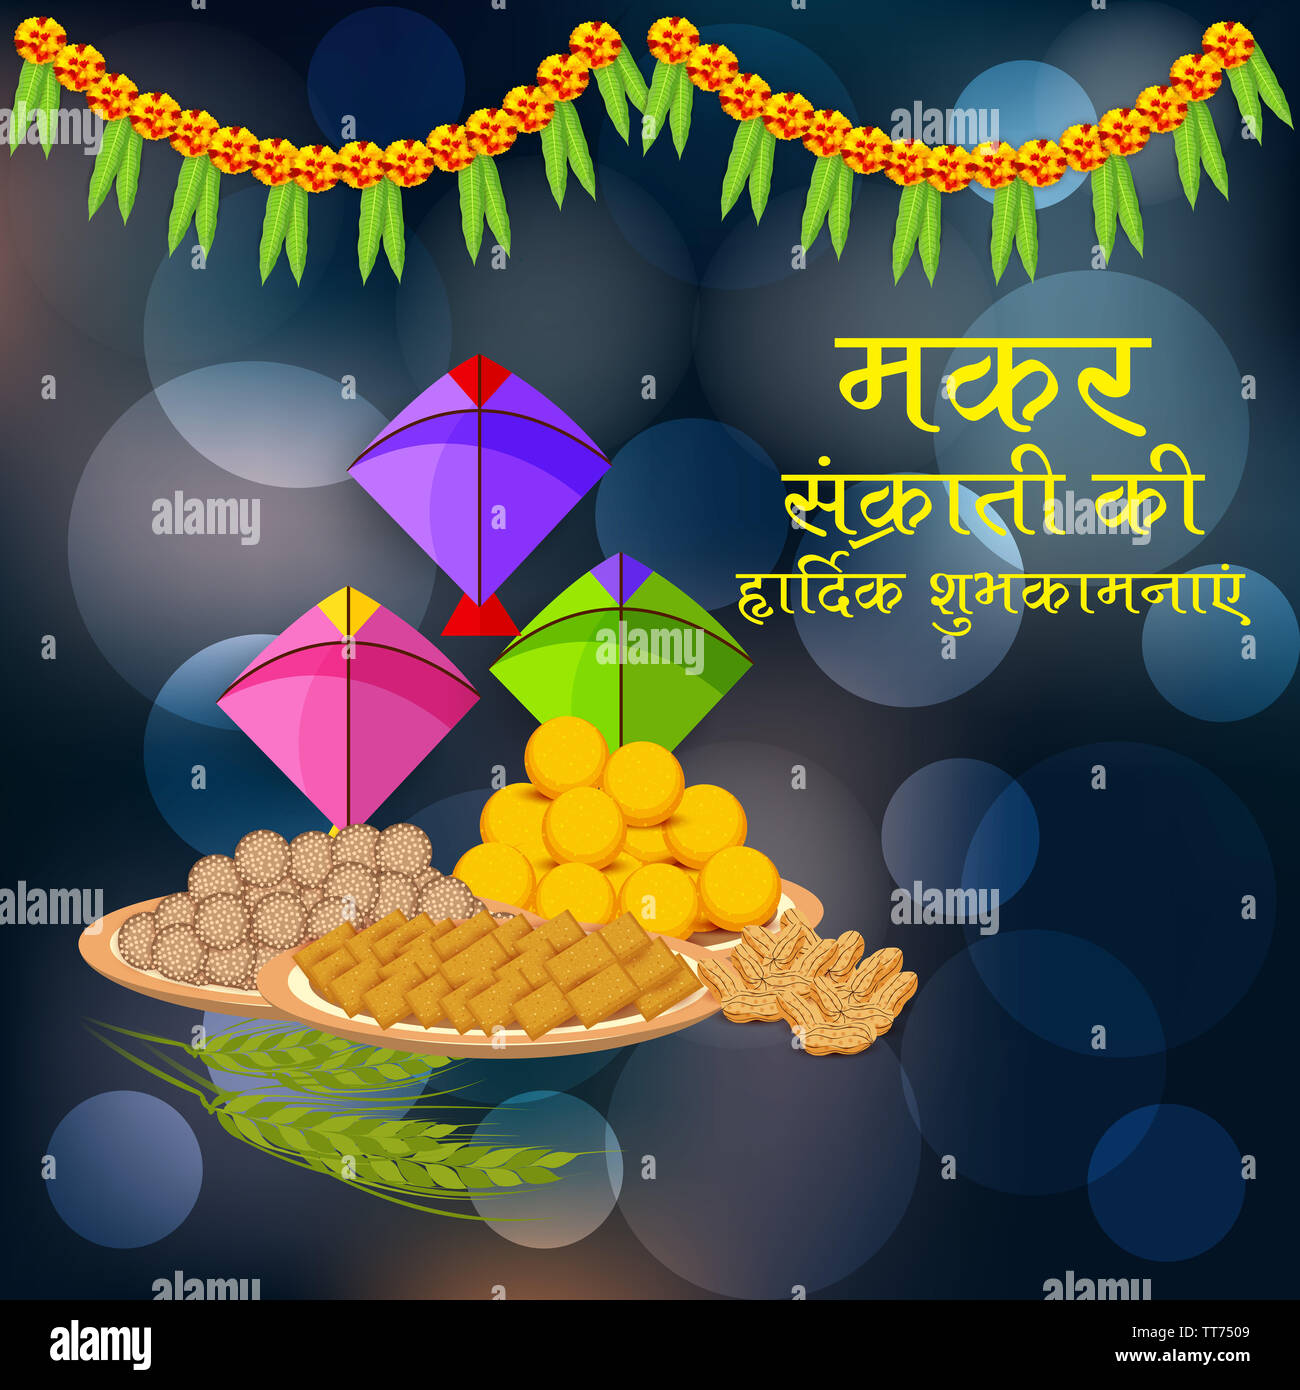 Makar Sankranti Wallpaper with Colorful Kite for Festival Stock Vector -  Illustration of makar, greeting: 106187743